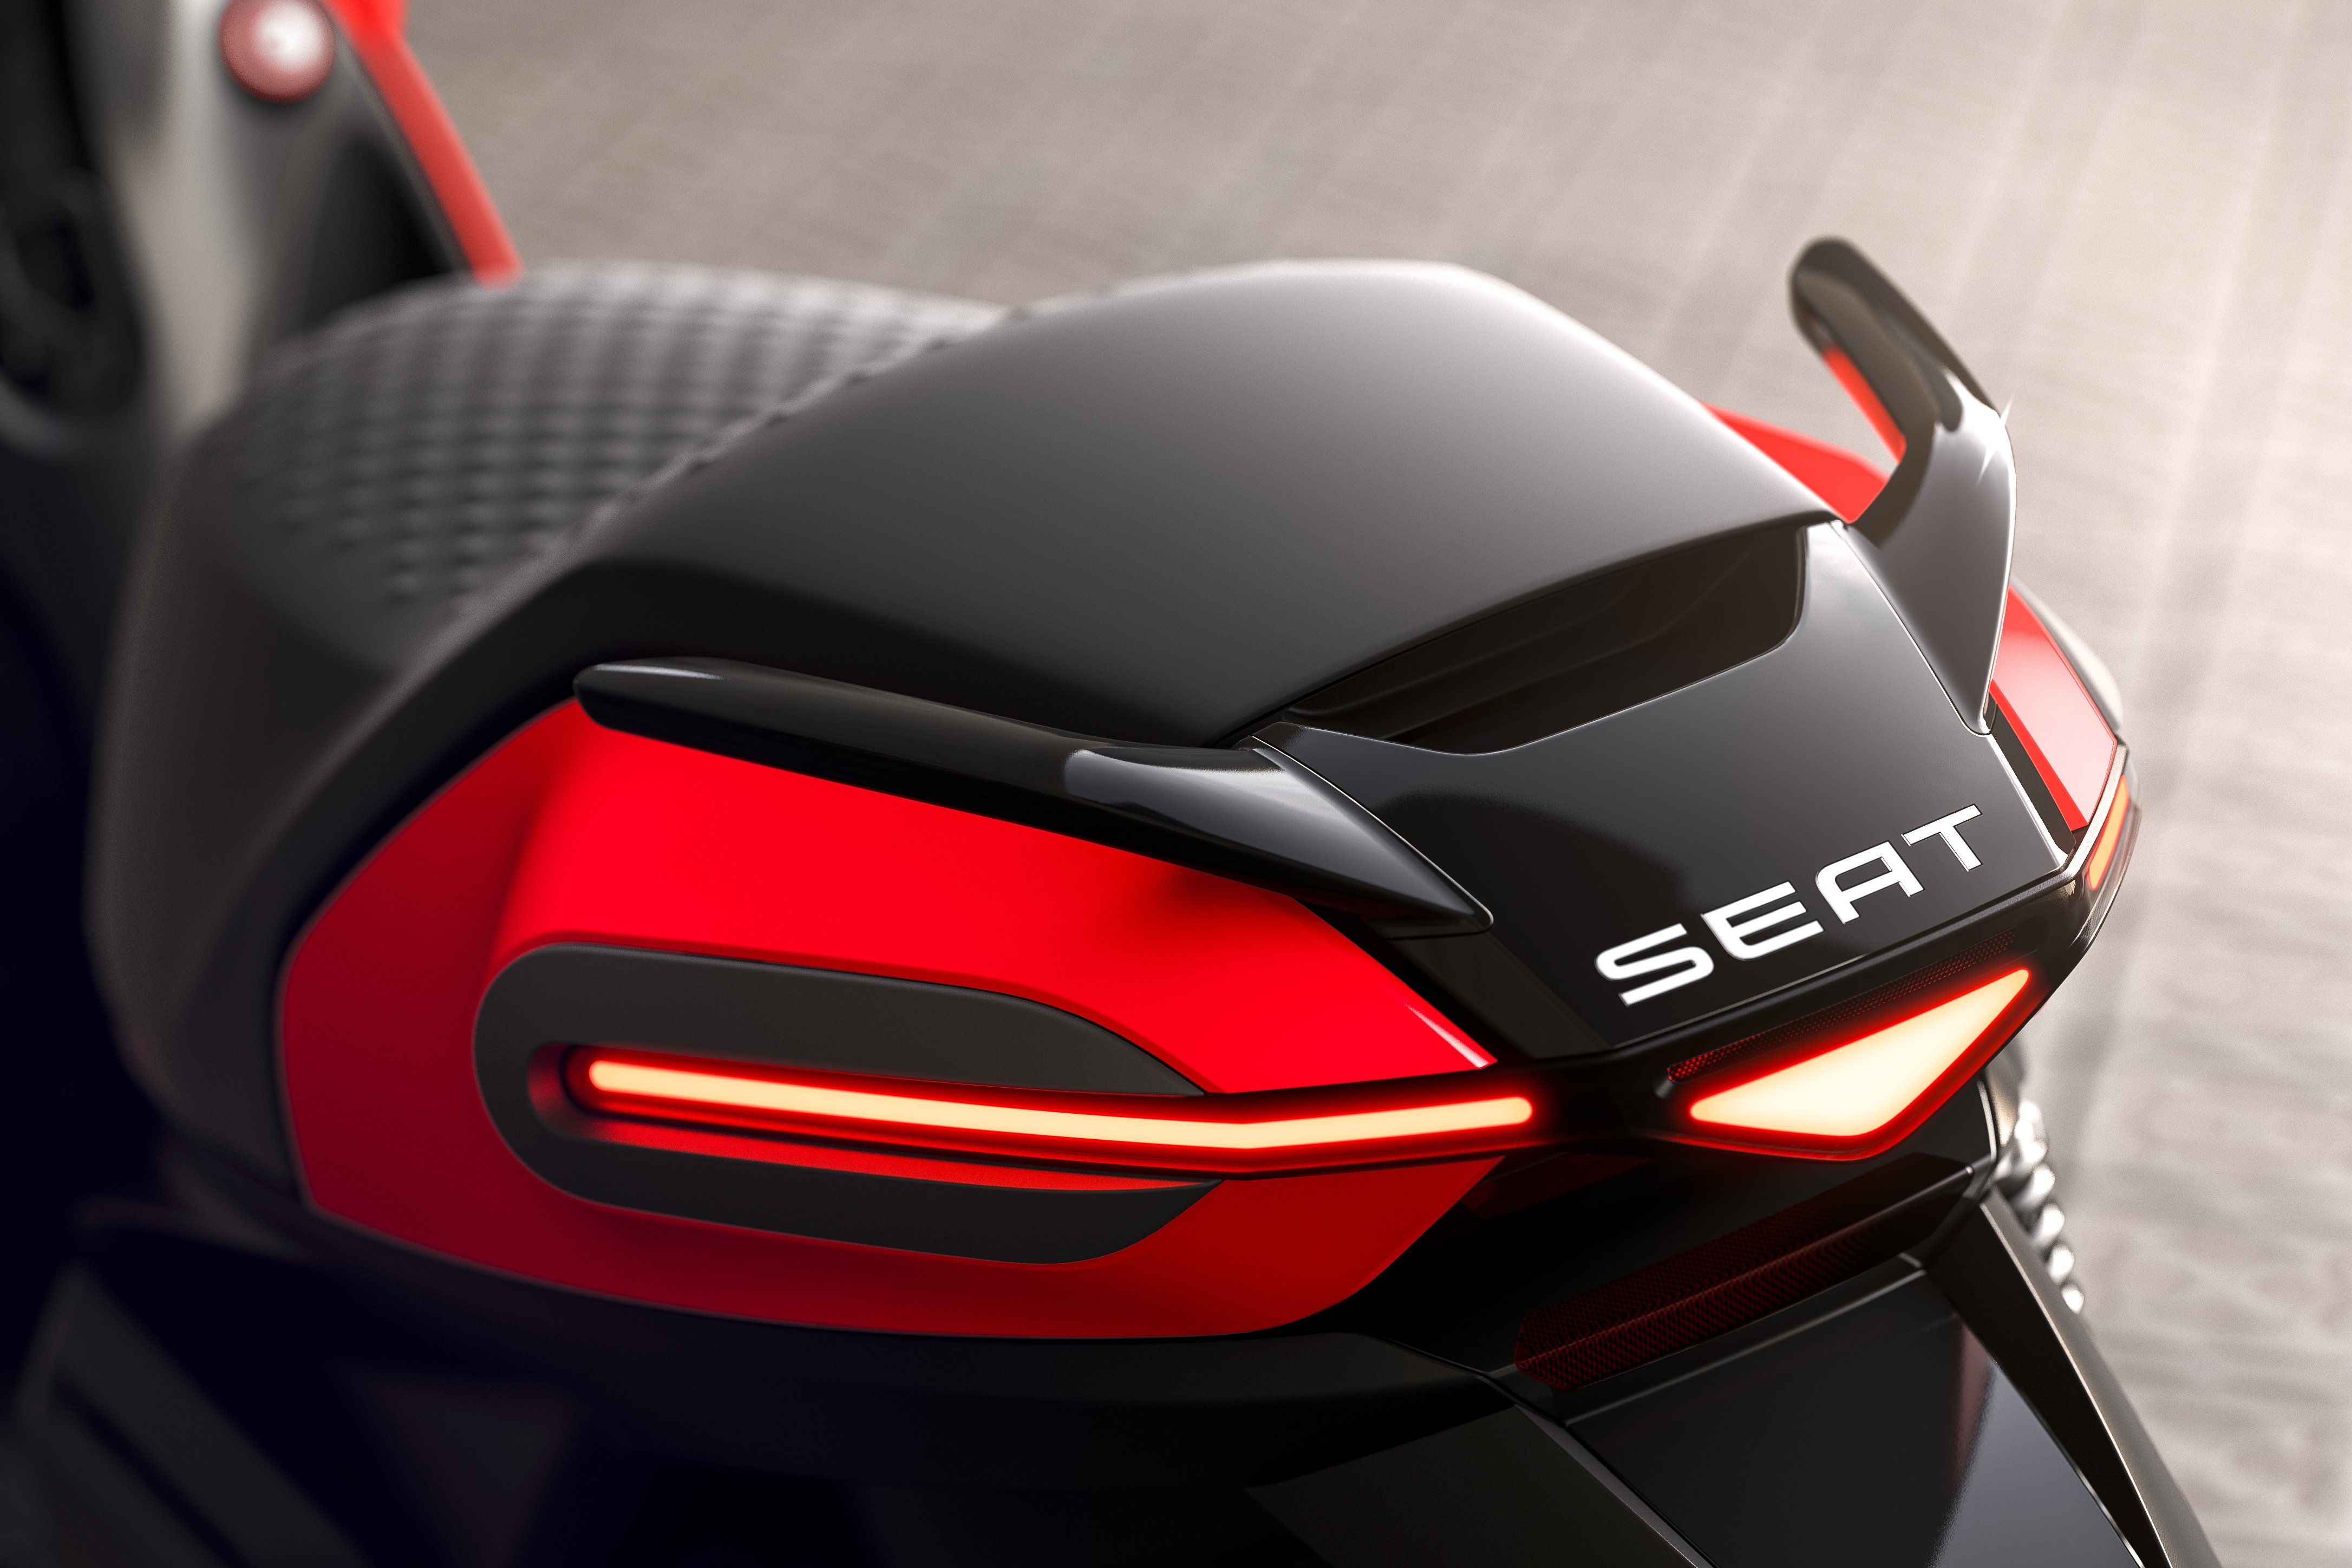 Seat venderá en el 2020 su primera motocicleta, que será eléctrica